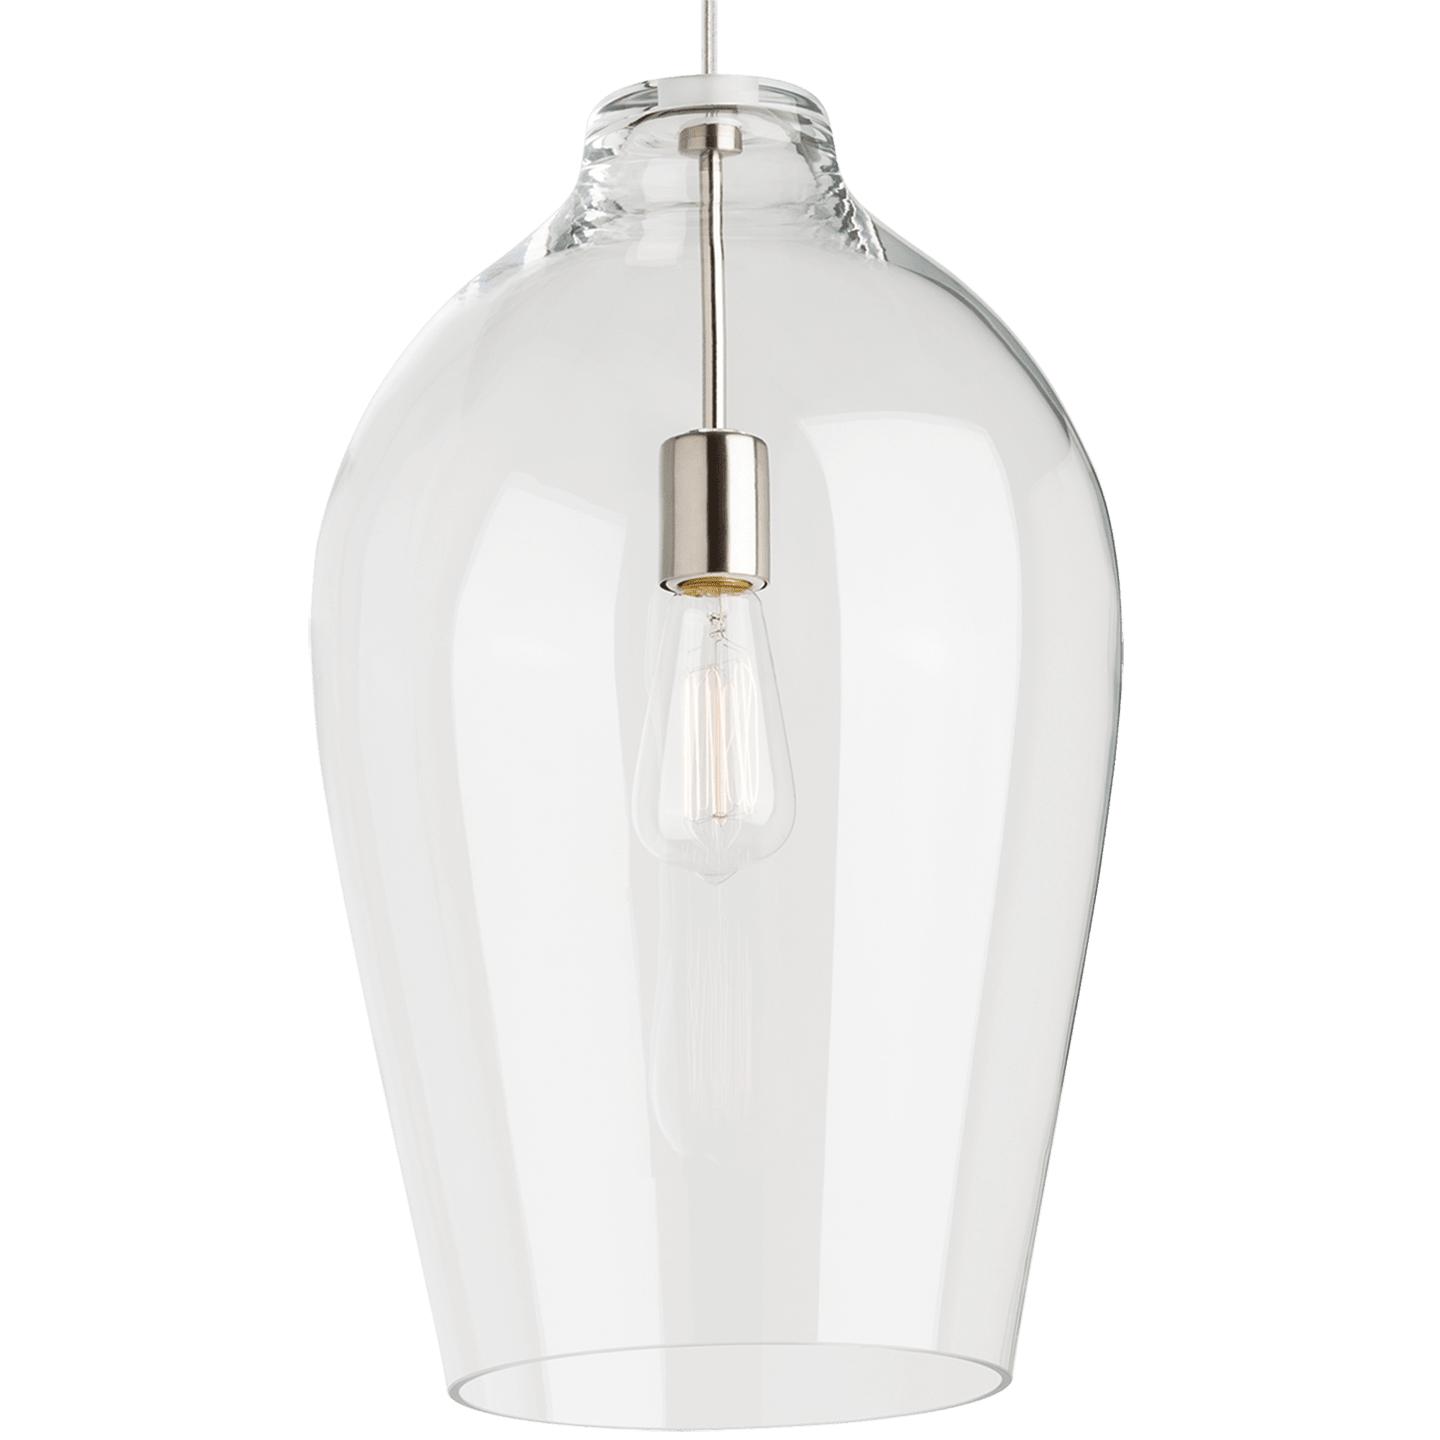 Купить Подвесной светильник Prescott Pendant в интернет-магазине roooms.ru